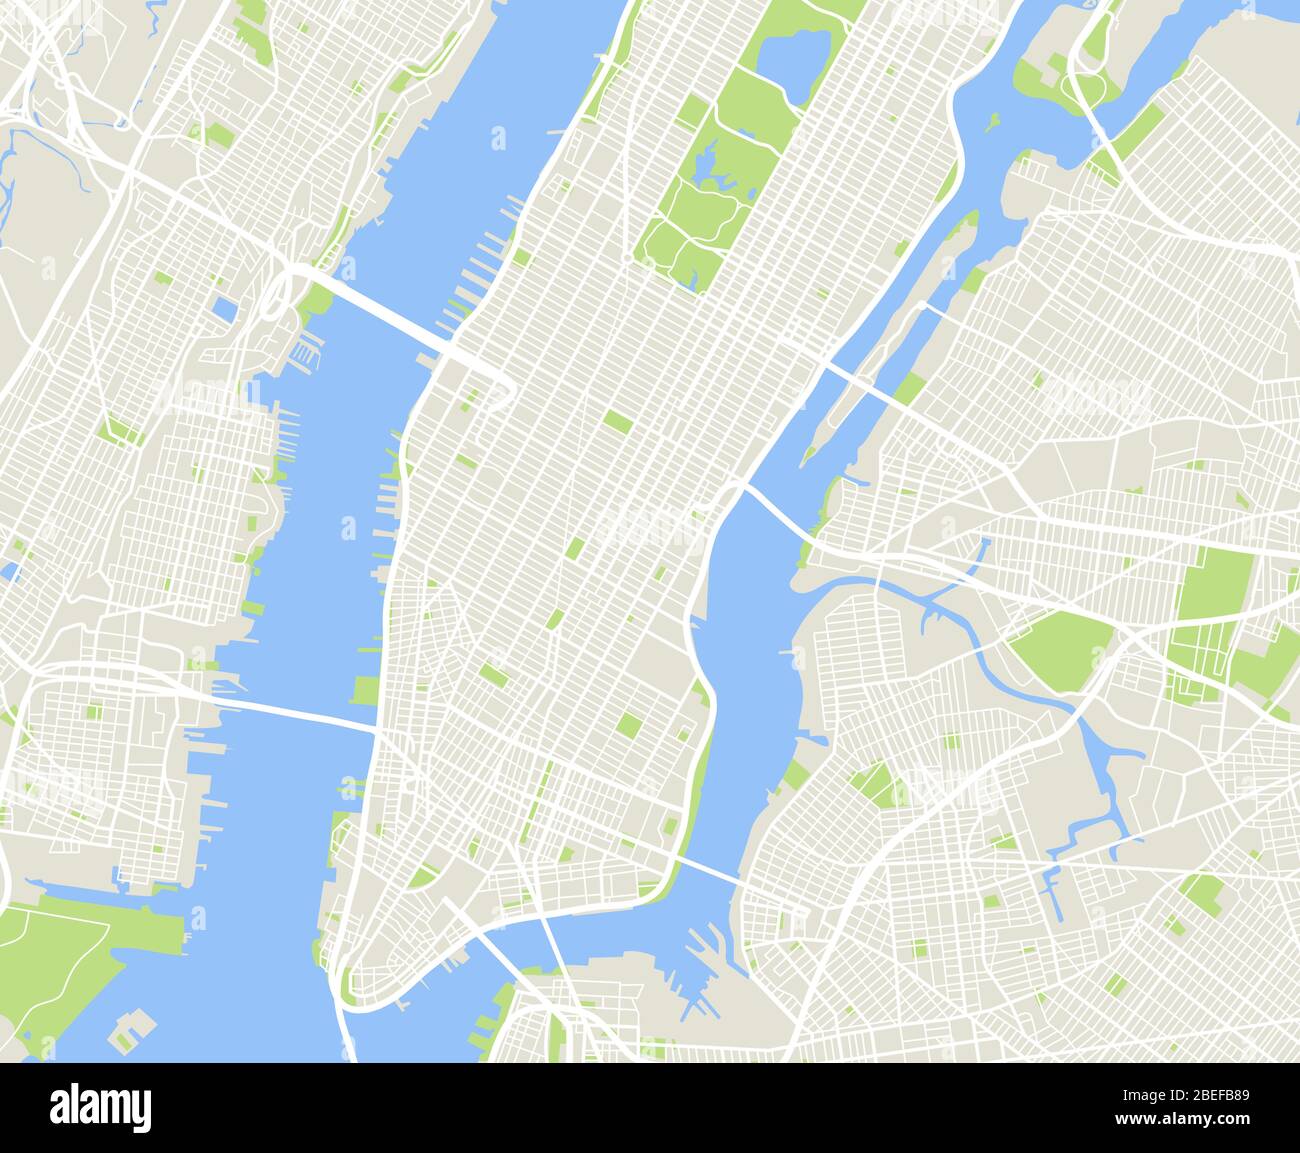 Mapa vectorial de las ciudades urbanas de Nueva York y Manhattan. Mapa urbano de Nueva york, ilustración cartográfica de nueva york y manhattan Ilustración del Vector